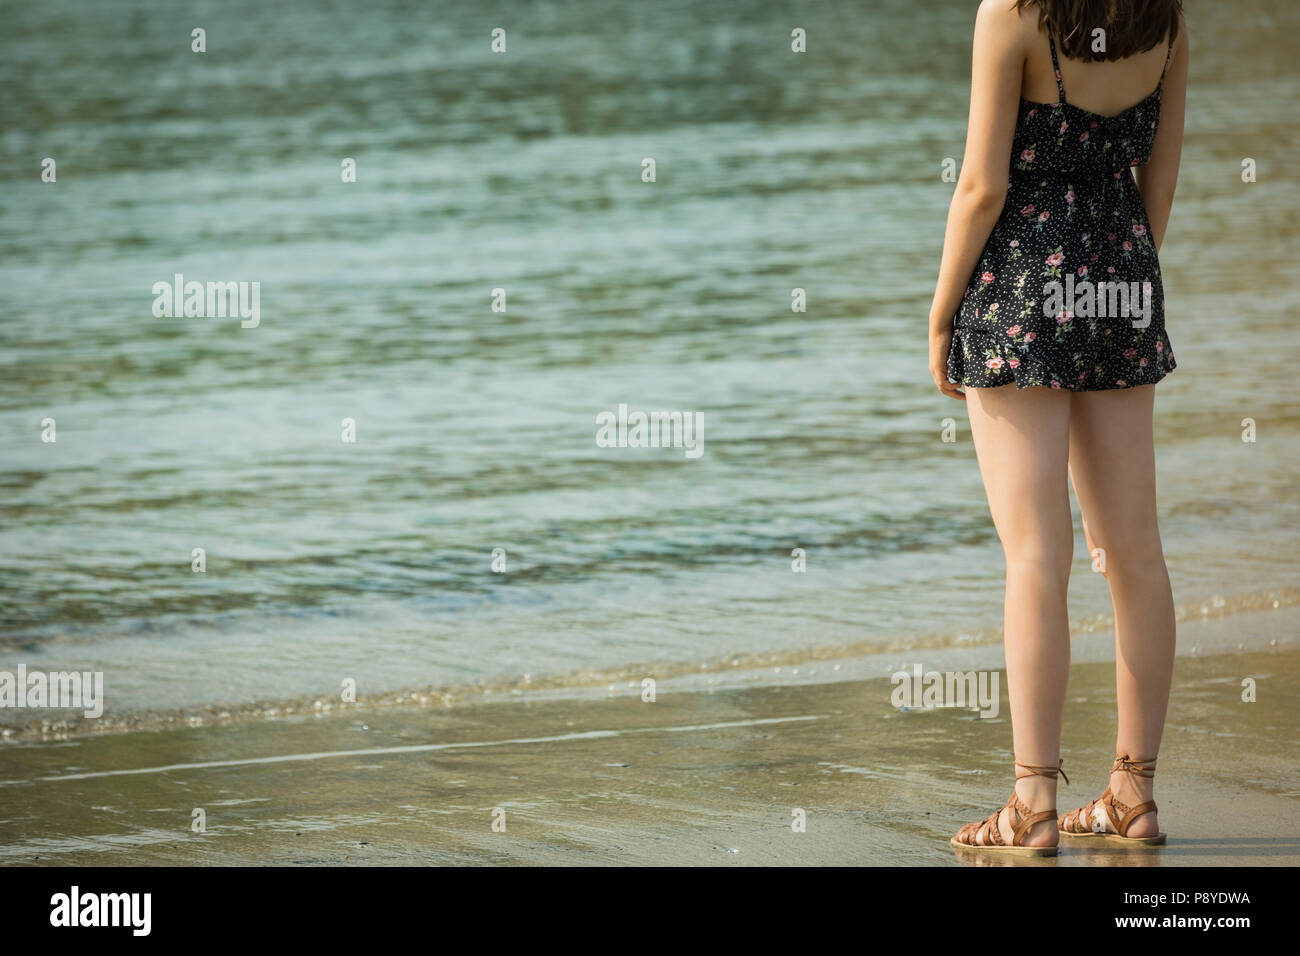 Femme debout sur la plage par une journée ensoleillée Banque D'Images